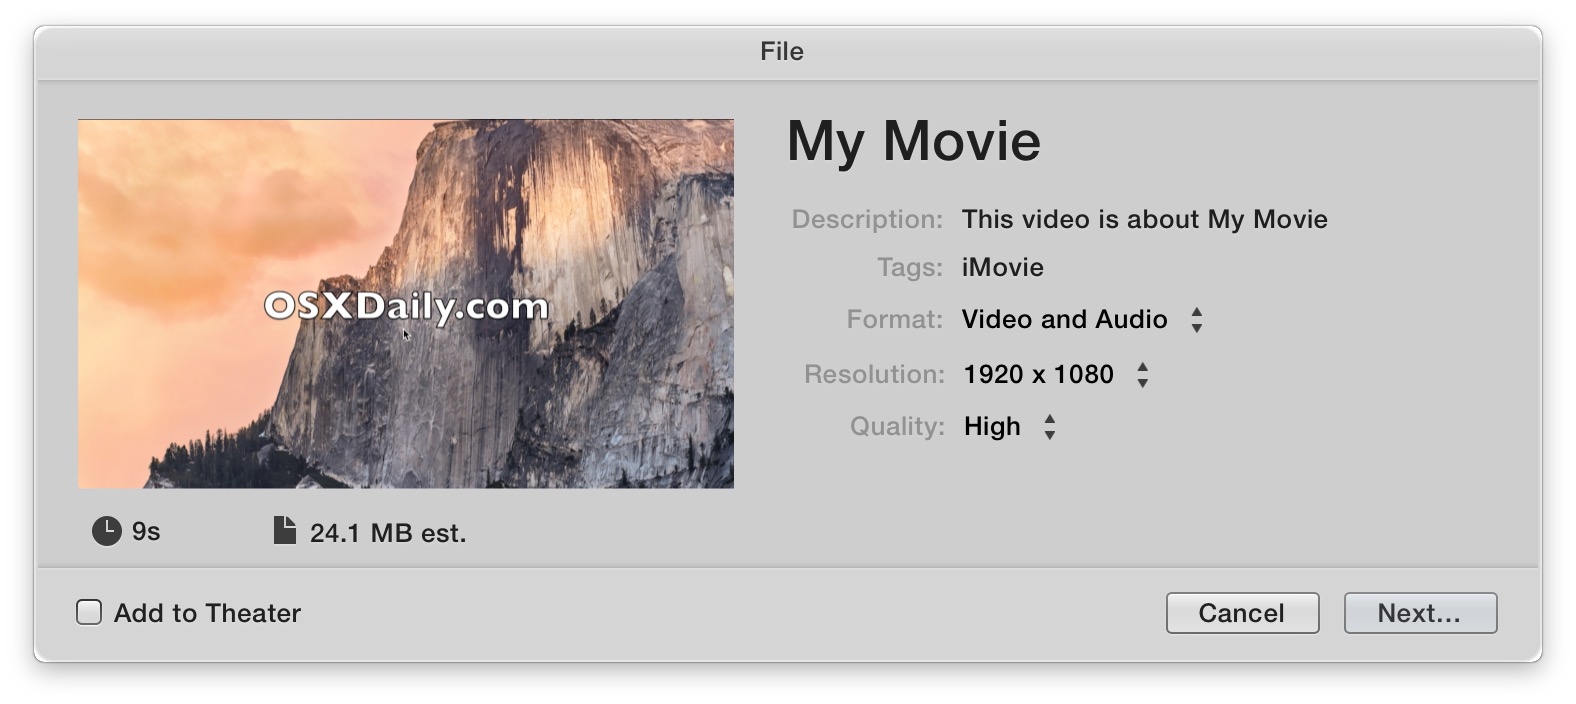 Guardar un video con iMovie para Mac OS X es una experiencia única para guardar archivos usando un menú Compartir